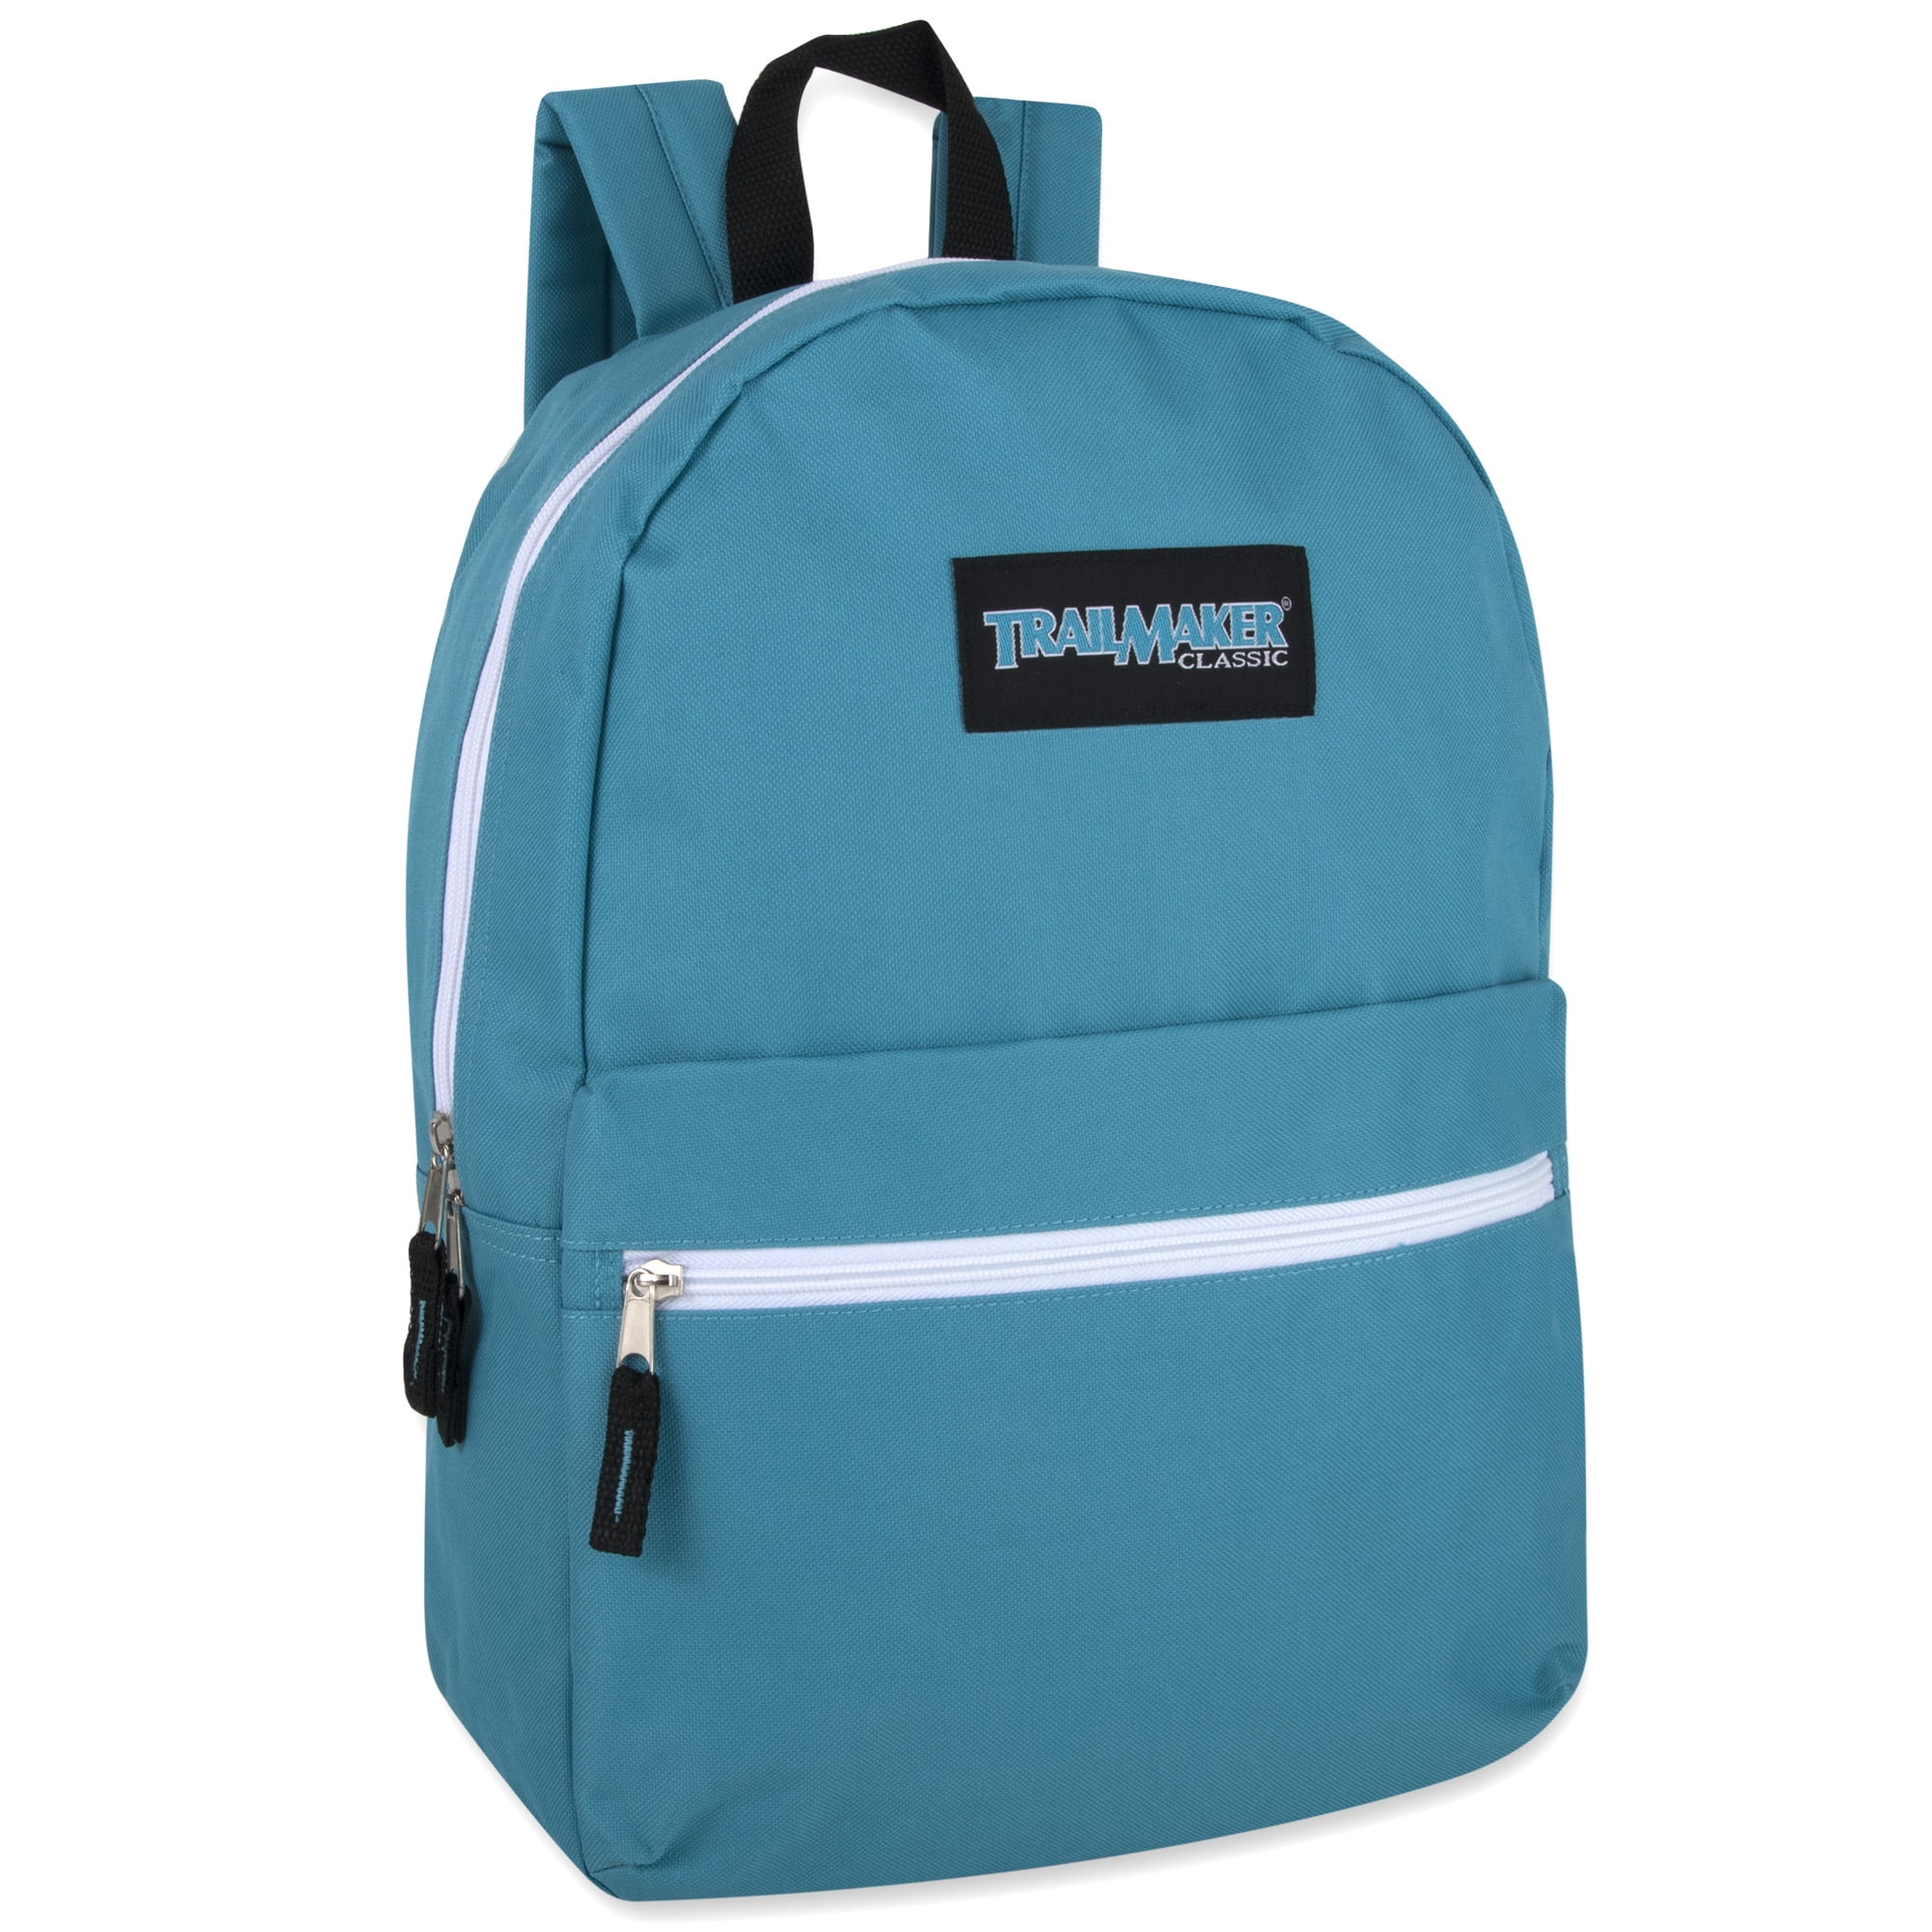 Trailmaker, 24 Pack Classic 17 inch Unisex Backpacks in Bulk 